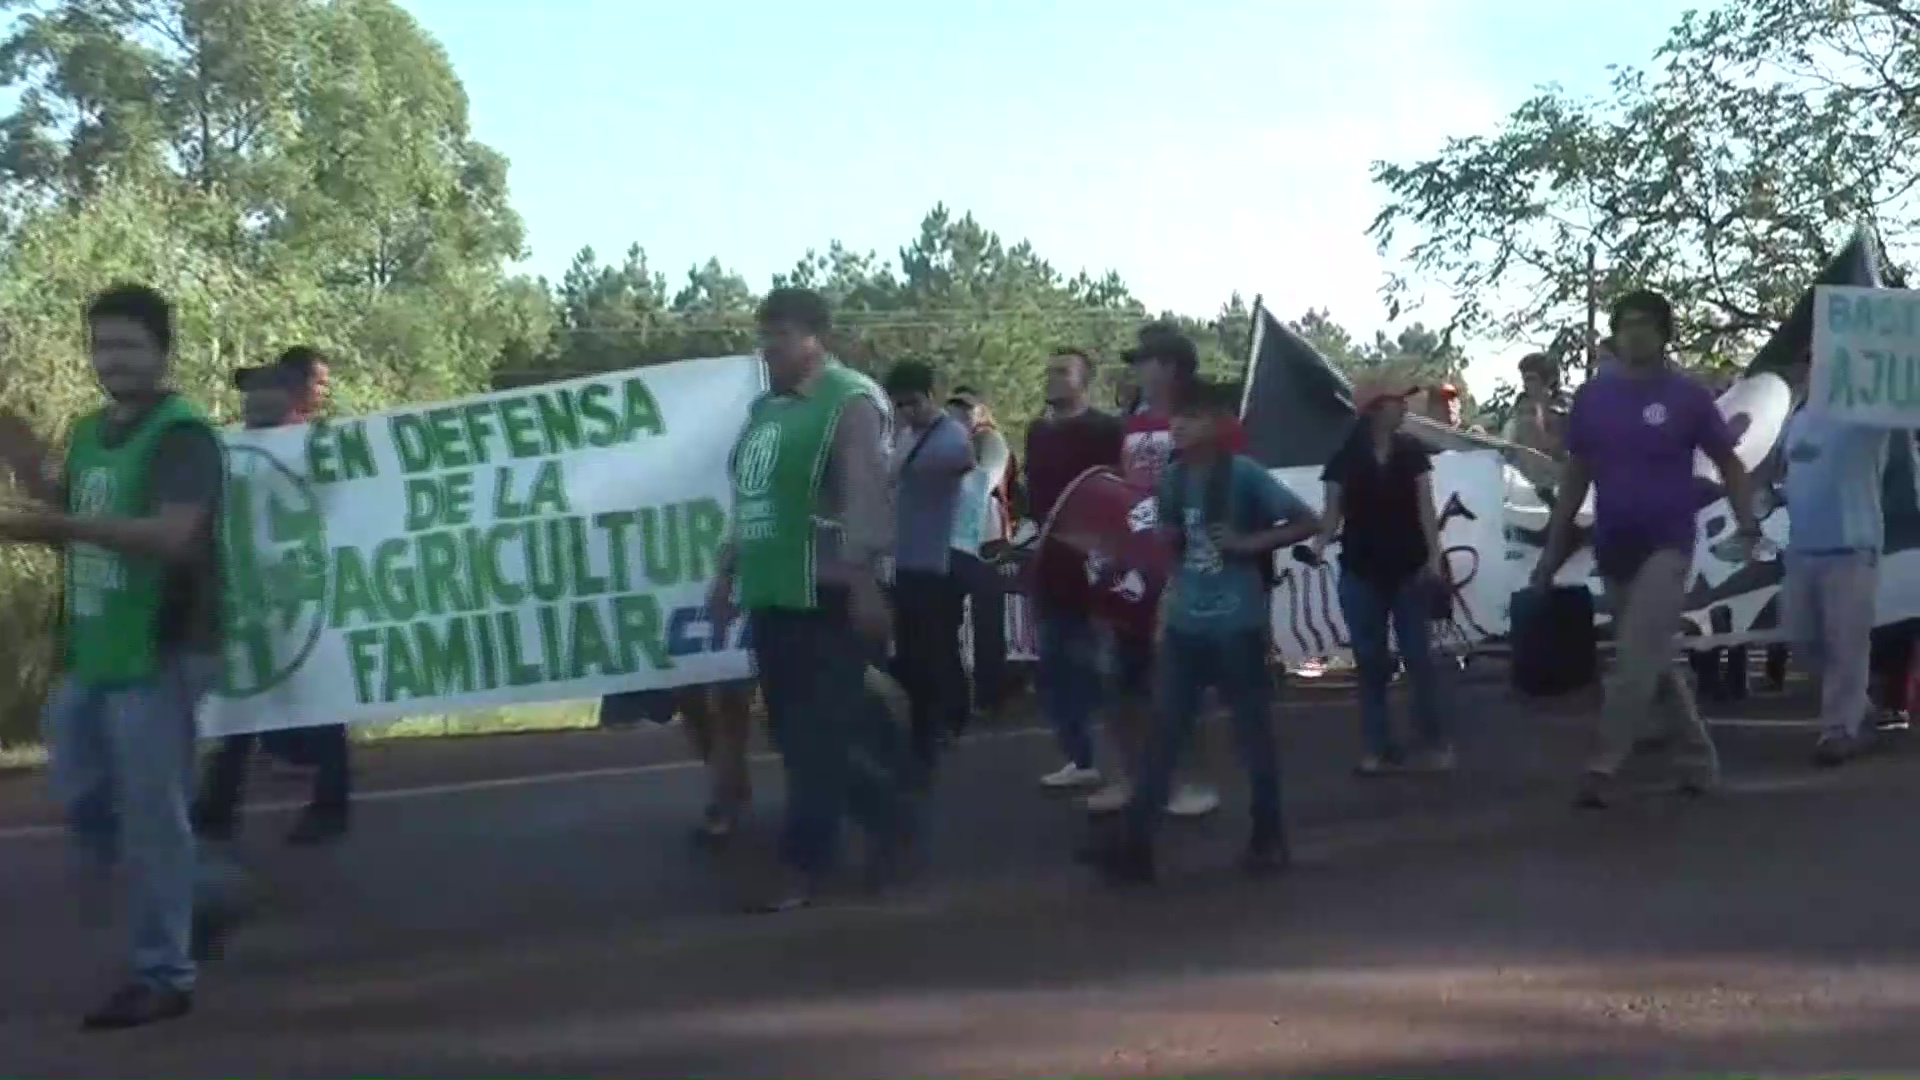 Protesta de empleados de agricultura familiar en Eldorado